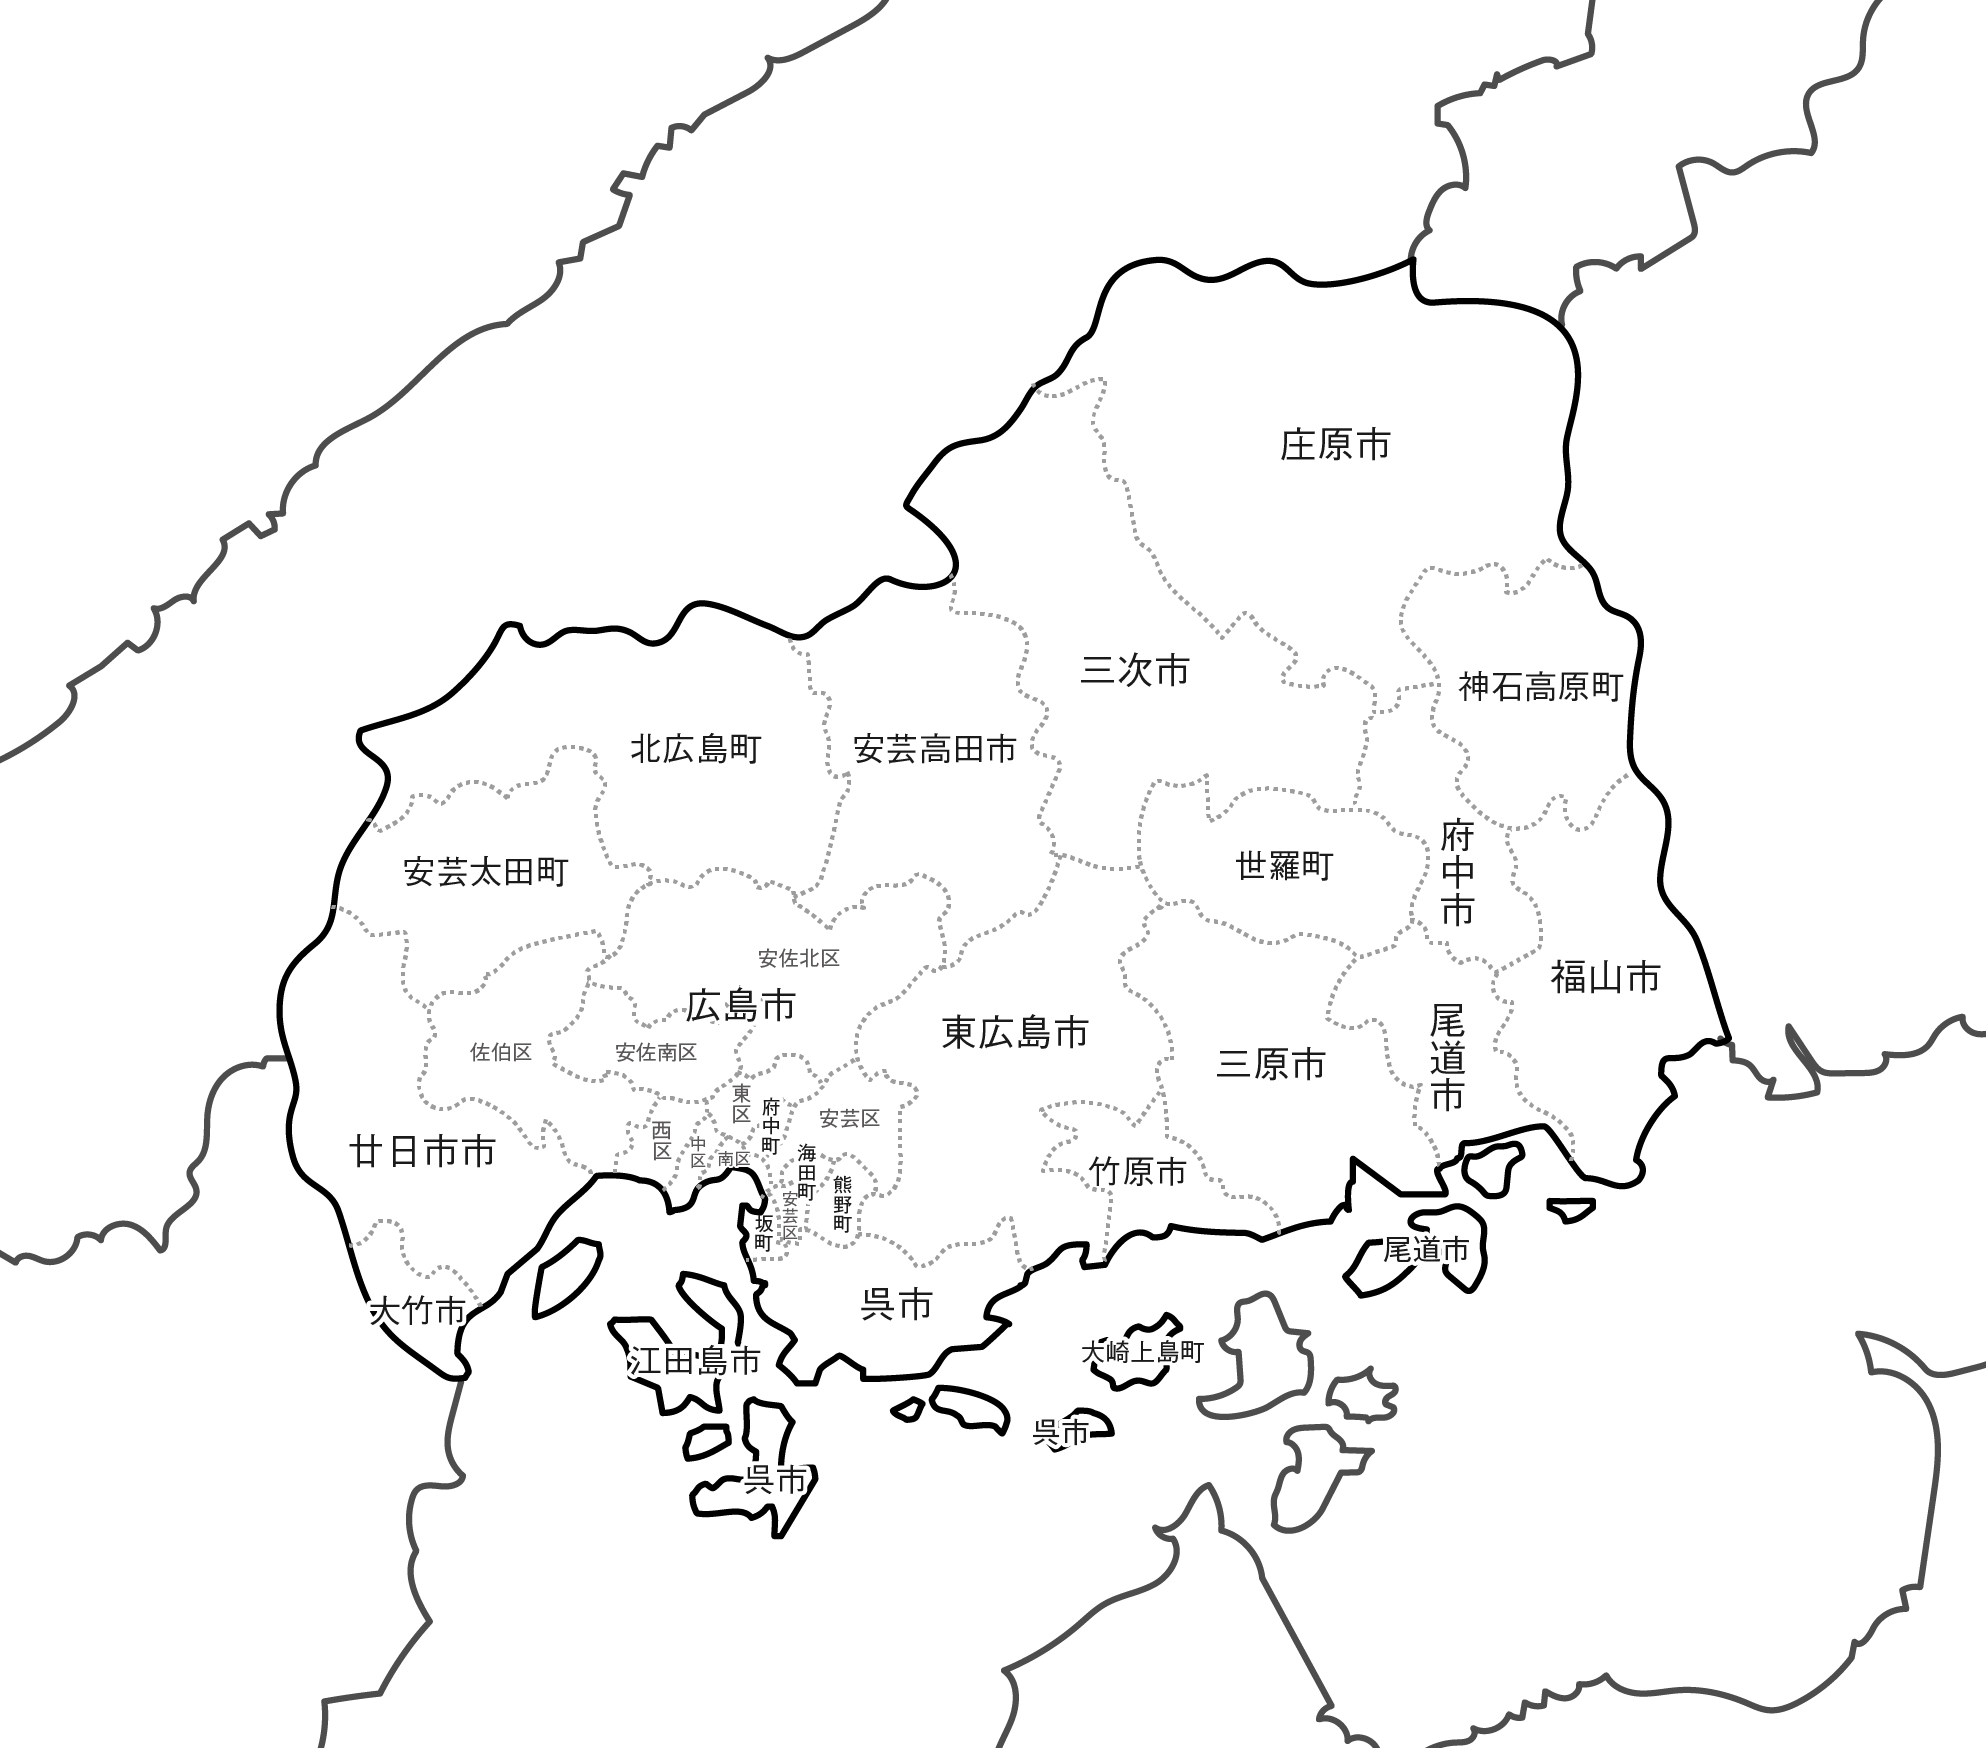 広島県の白地図イラスト無料素材集 県庁所在地 市区町村名あり